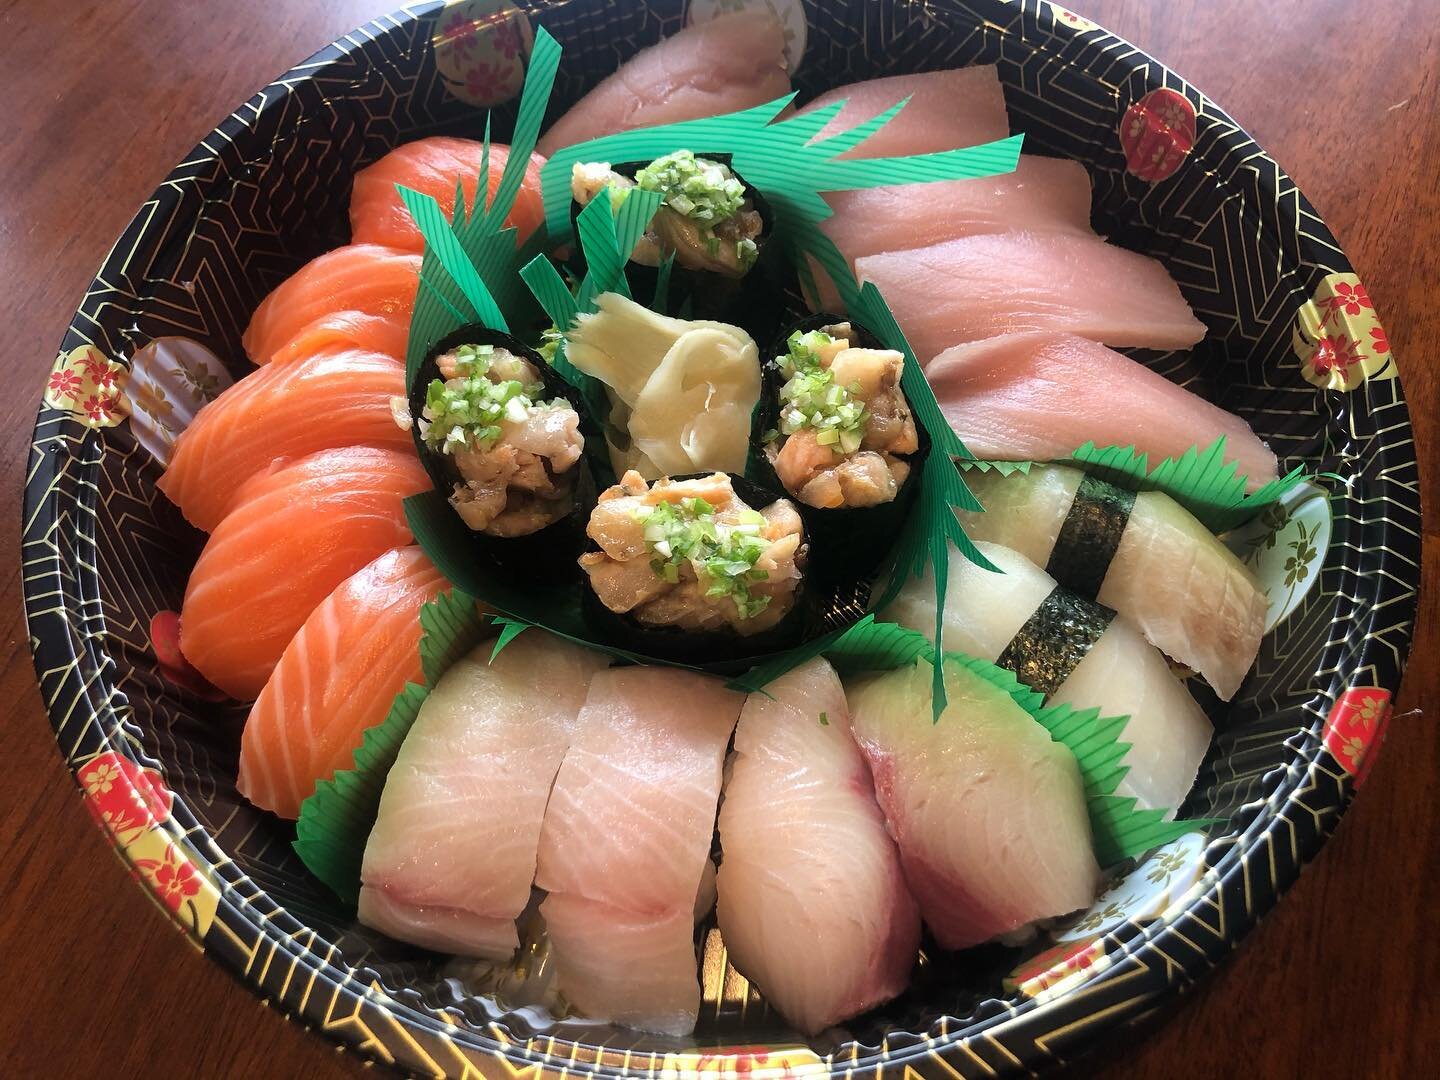 Where all the sushi lovers at? 💥 🍣💥🍣#saskatoonsushi #nigiri🍣#shoplocal#yxe